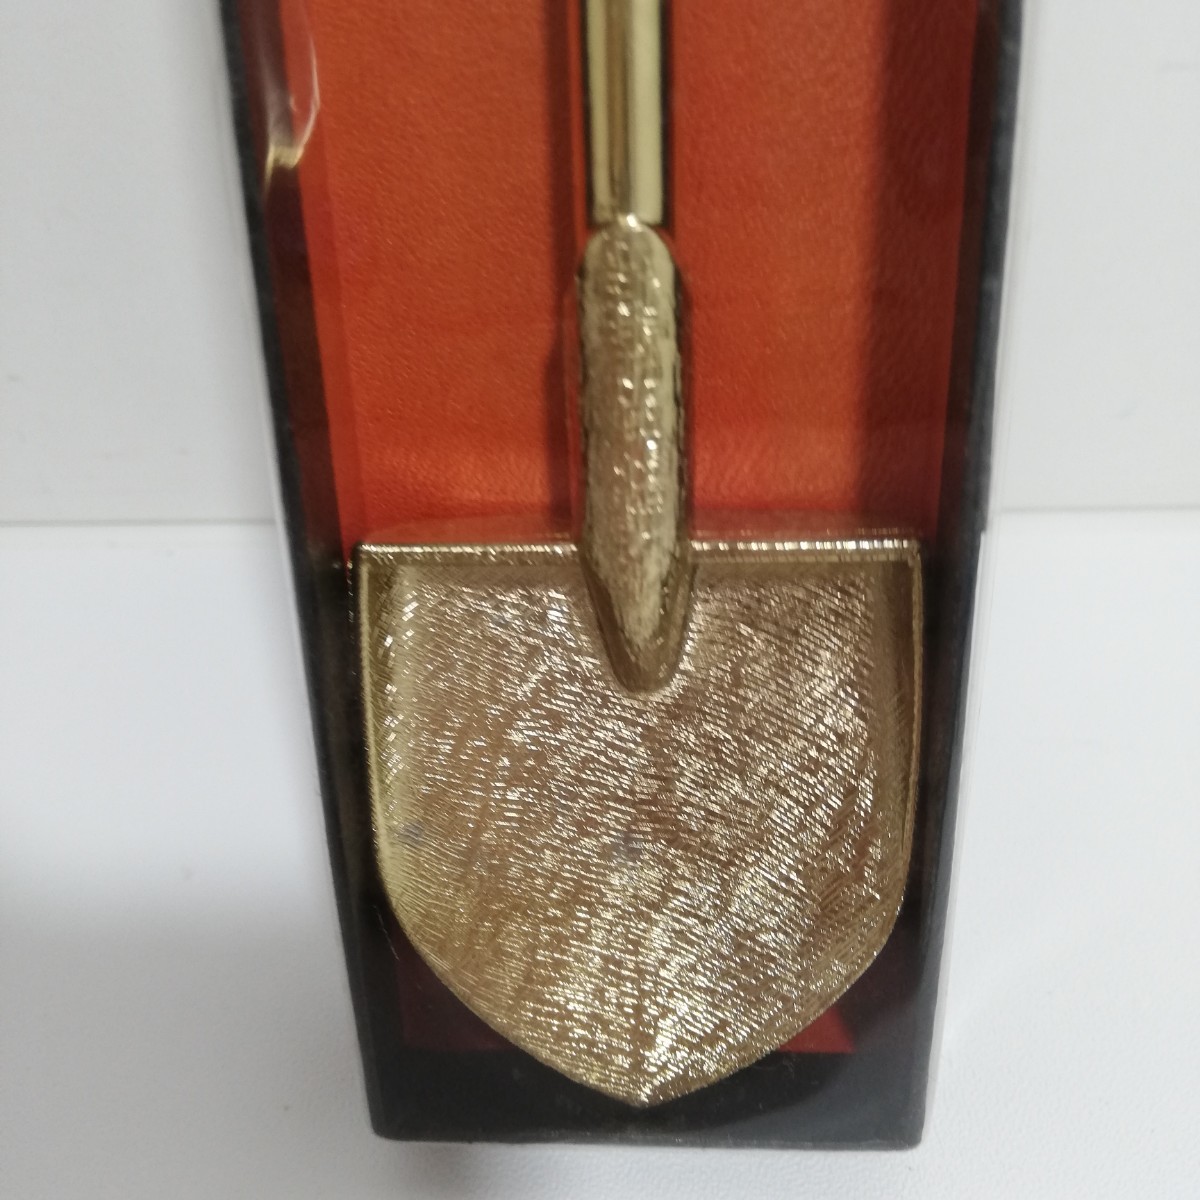 1980s スコップ型 置物 ボトルオープナー&アイスクラッシャー 17.8cm 未使用 [ゴールドメッキ 非鉄金属製 土産物]_画像2